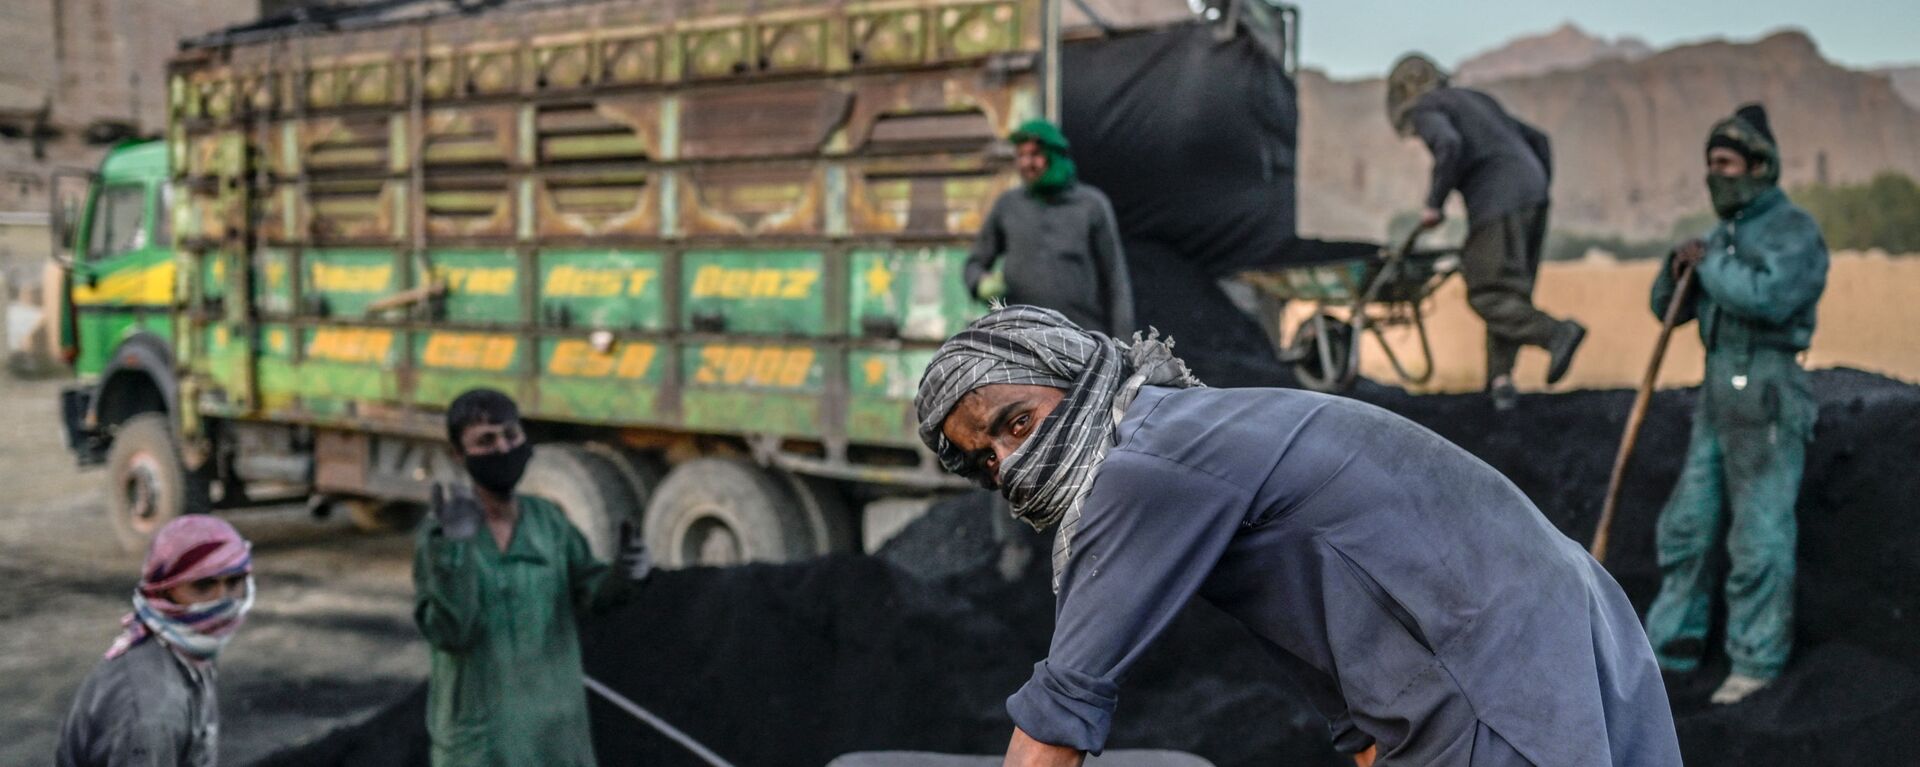 يستعد عمال الهزارة لتحميل الفحم على شاحنة بالقرب من الموقع الذي كان يقف فيه تمثال بوذا، قبل أن تدمره طالبان في مارس 2001، في مقاطعة باميان في 3 أكتوبر 2021. - سبوتنيك عربي, 1920, 22.11.2021